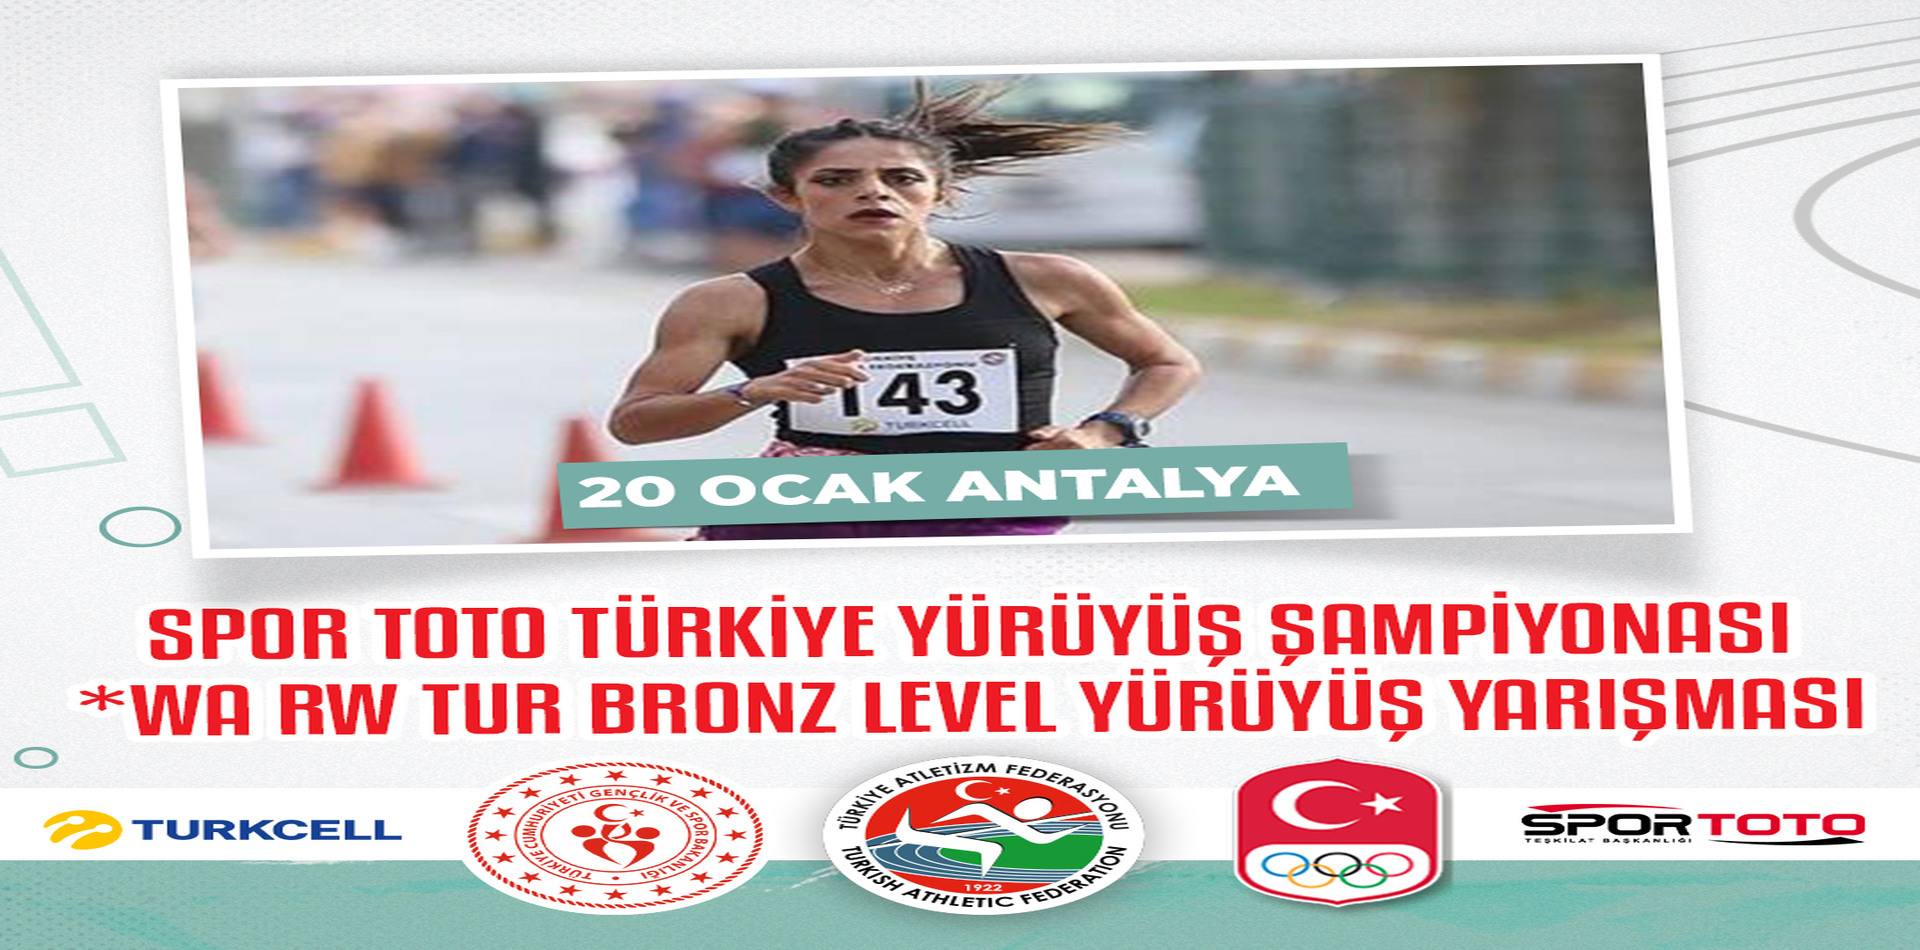 Spor Toto Türkiye Yürüyüş Şampiyonası Yarın Antalya’da yapılacak.